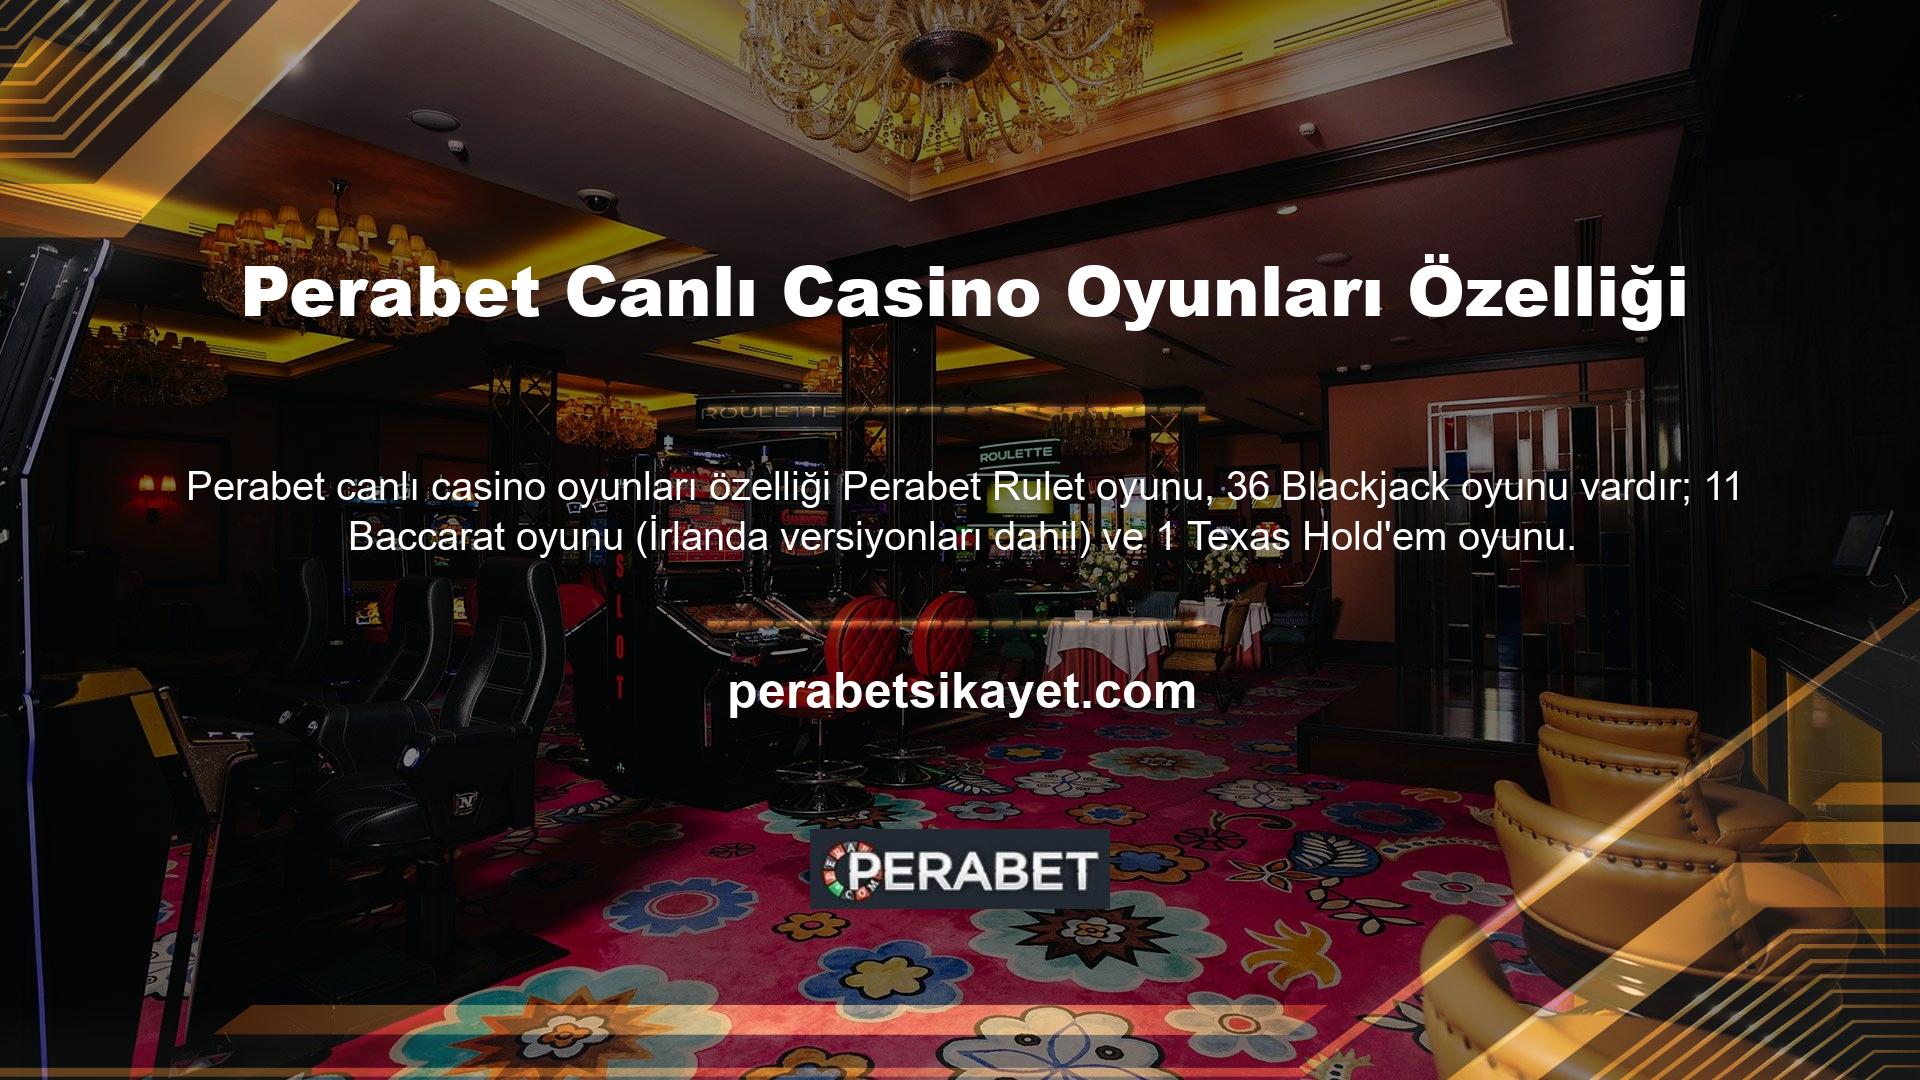 Perabet Çevrimiçi Casino Oyunları bölümünde Blackjack, Baccarat, Rulet ve Texas Hold'em gibi çeşitli oyunlar sunulmaktadır